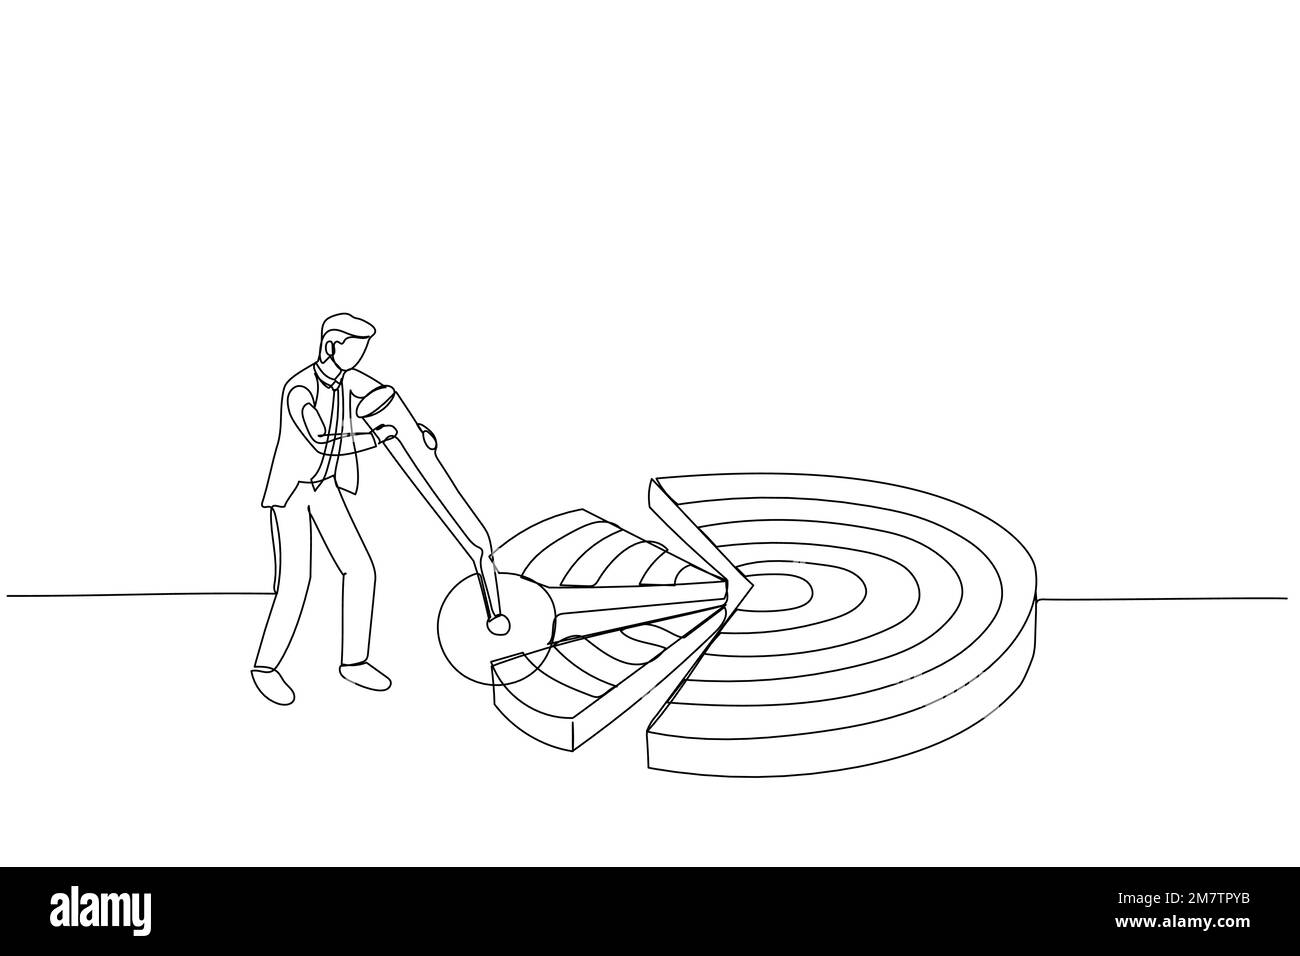 Cartoon eines Geschäftsmanns zerlegt Dartboard-Ziele in Stücke. Metapher für die Untergliederung eines großen Ziels in kleine erreichbare Ziele. Fortlaufender Styling-Styling Stock Vektor